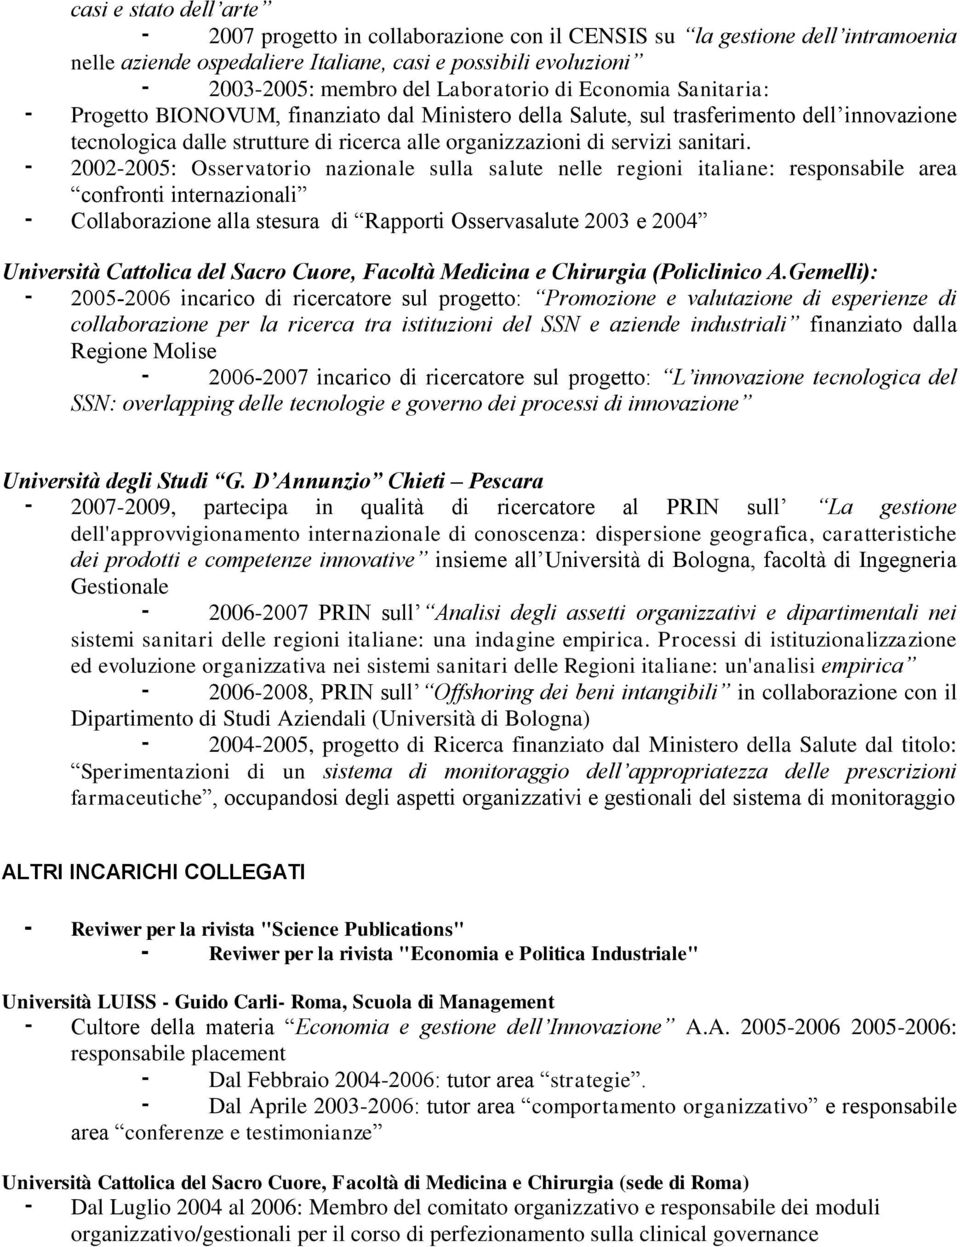 2002-2005: Osservatorio nazionale sulla salute nelle regioni italiane: responsabile area confronti internazionali Collaborazione alla stesura di Rapporti Osservasalute 2003 e 2004 Università